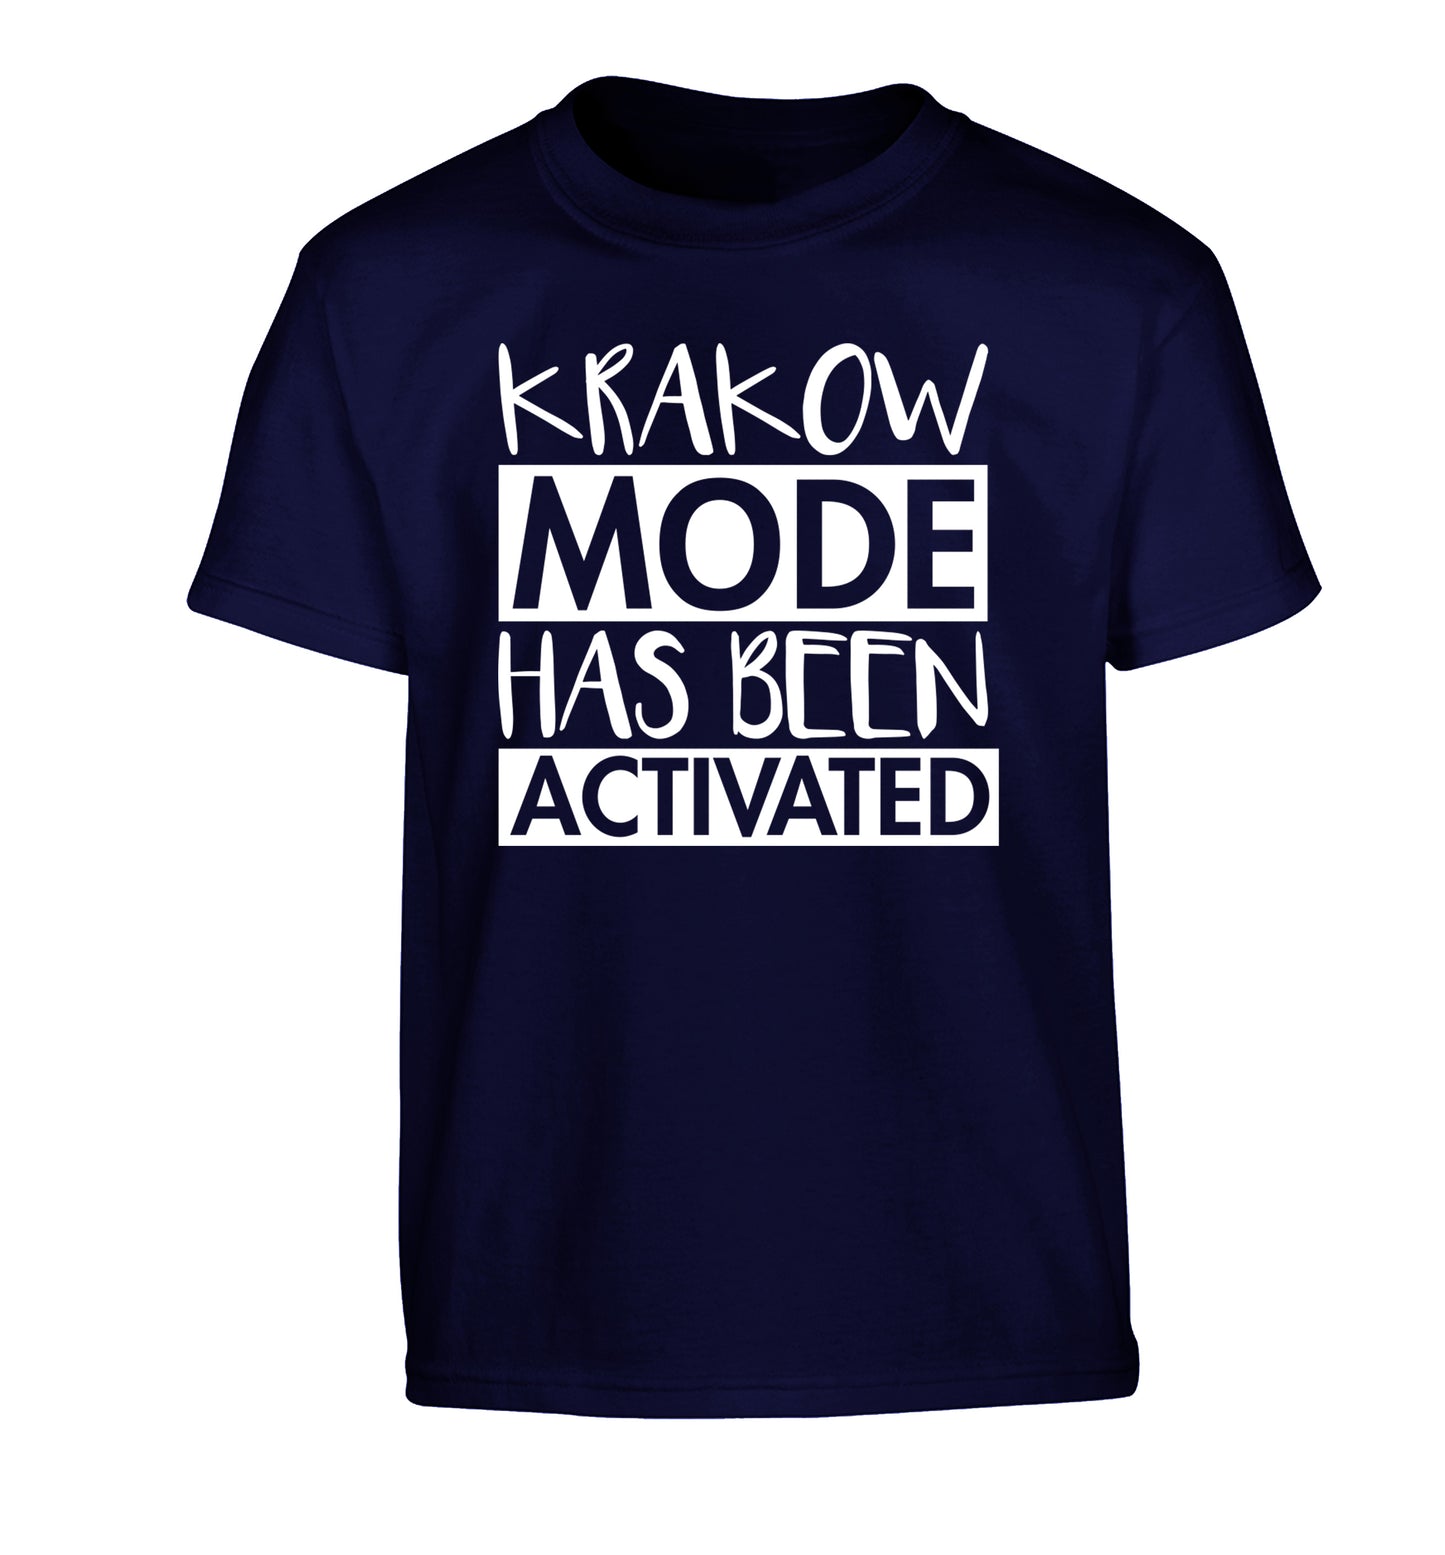 Krakow mode has been activated Children's navy Tshirt 12-13 Years